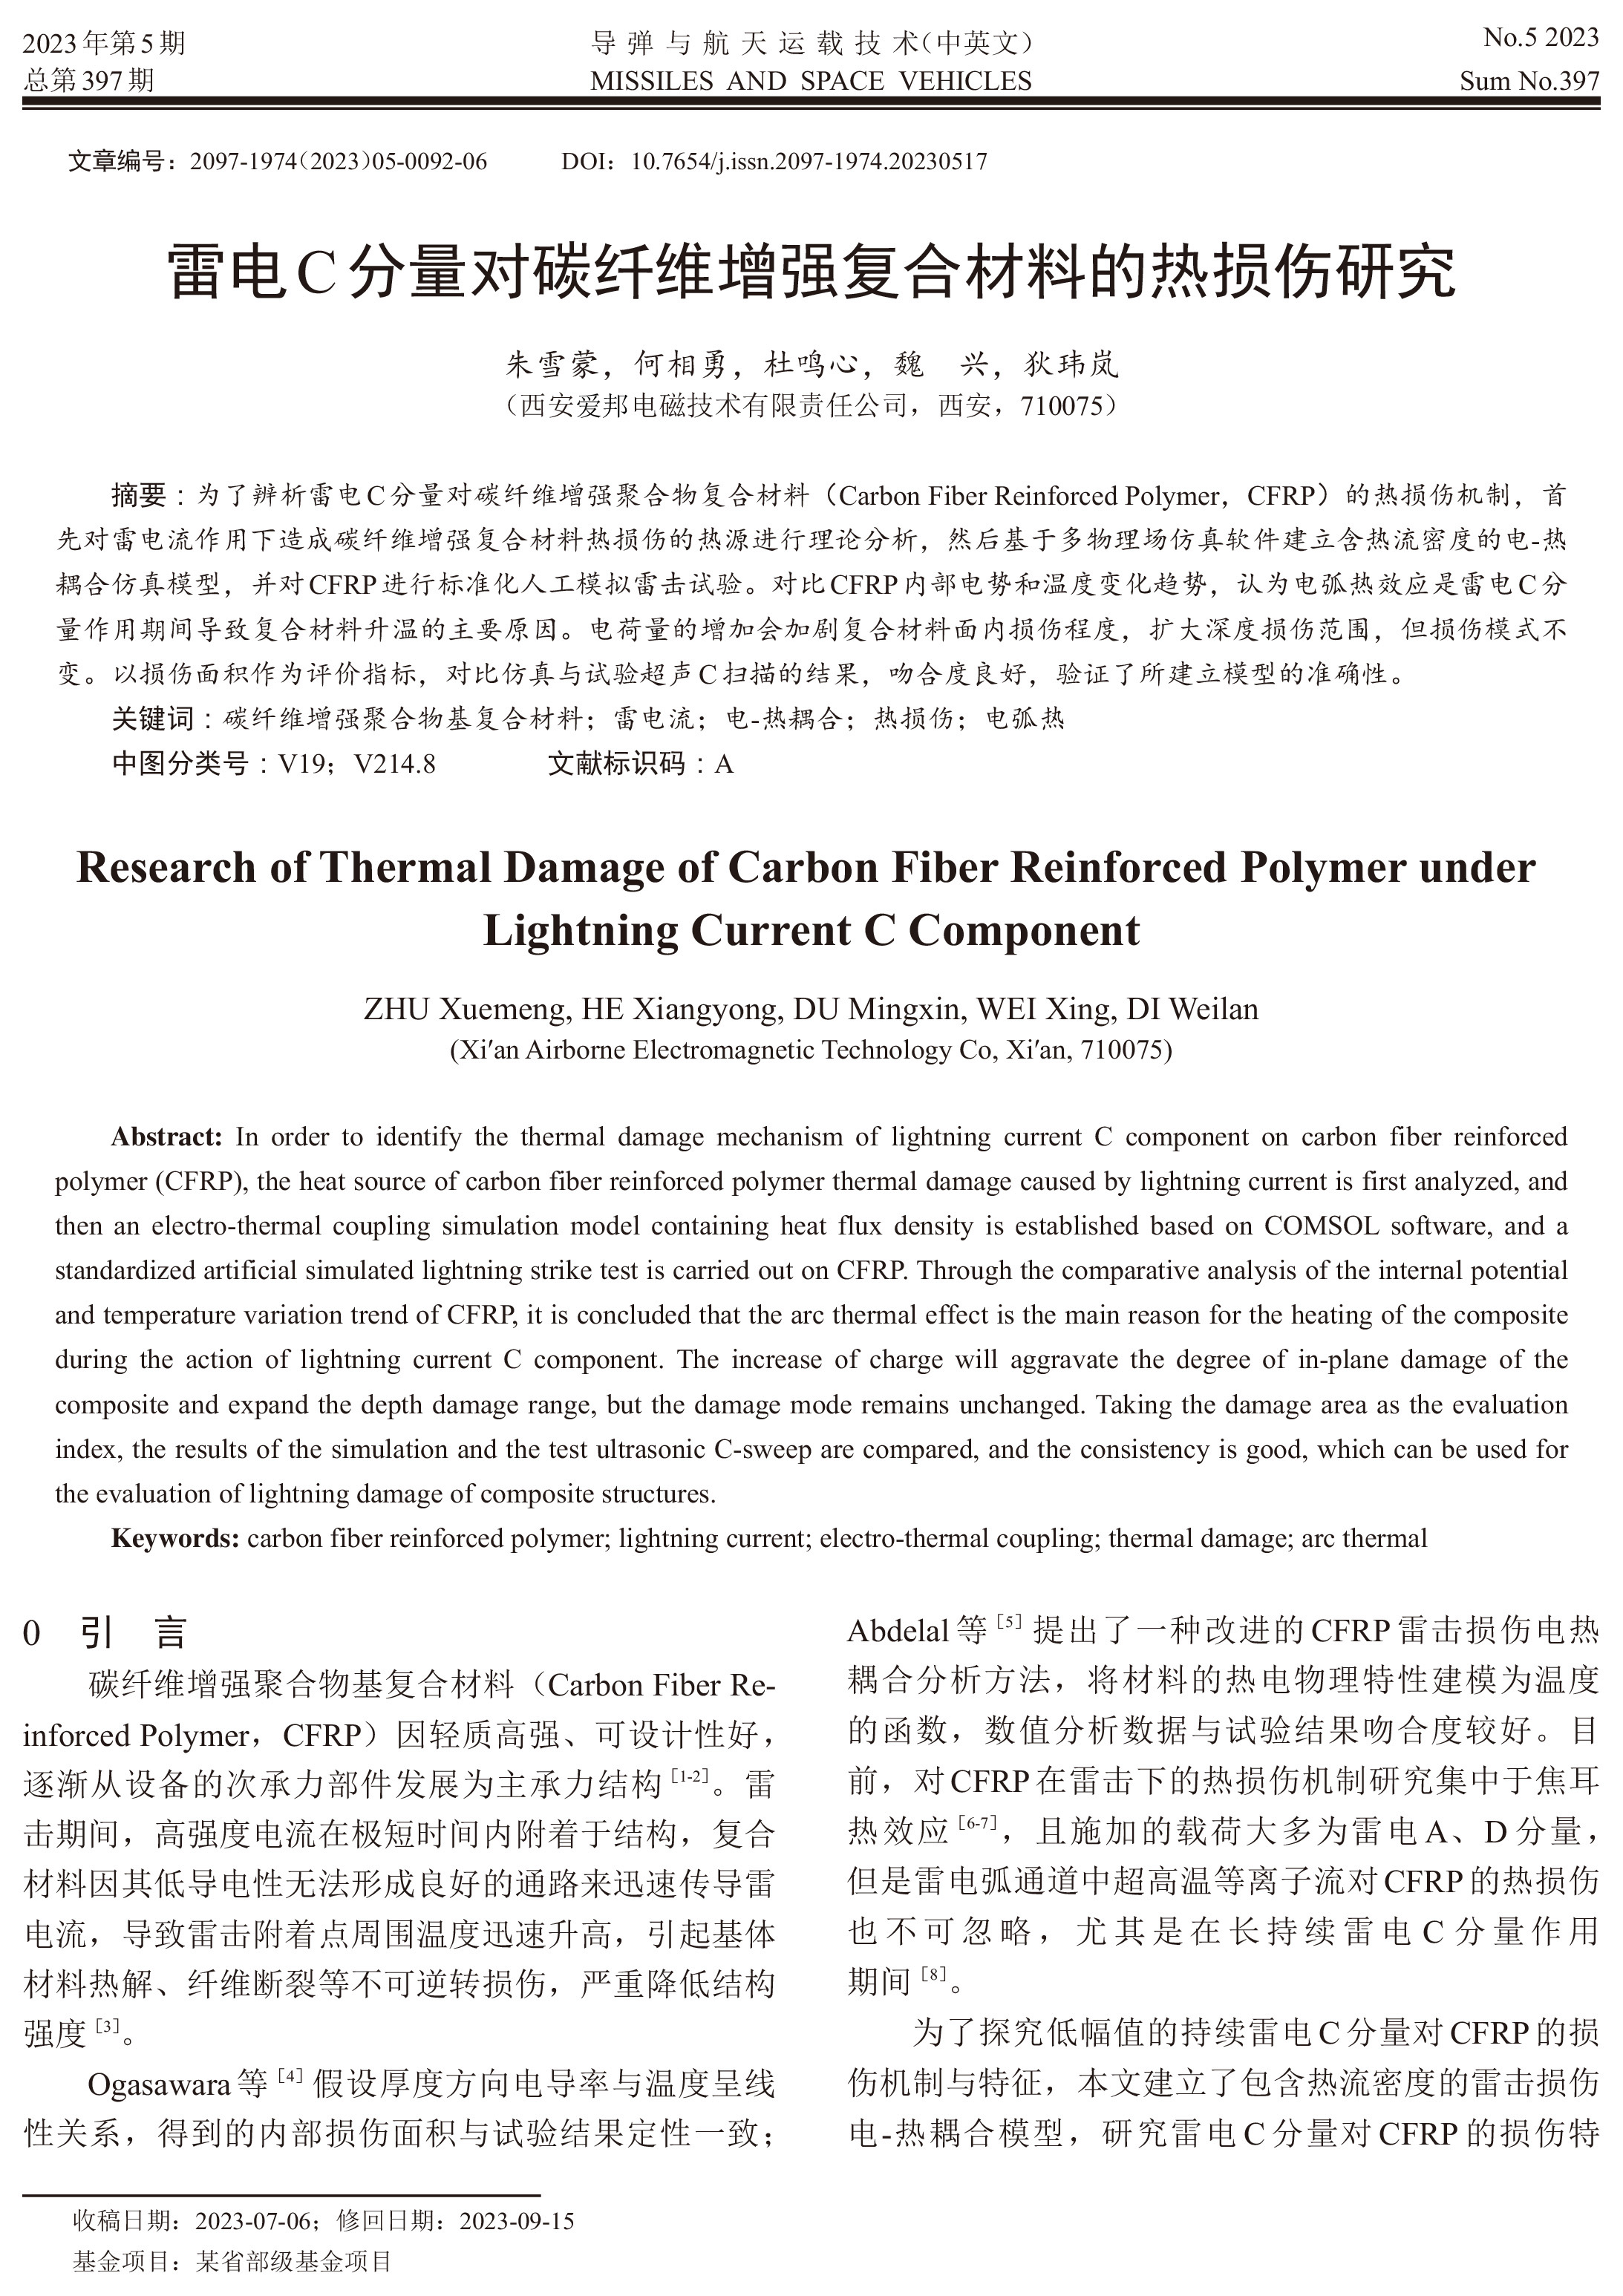 雷电C分量对碳纤维增强复合材料的热损伤研究_朱雪蒙-1.jpg